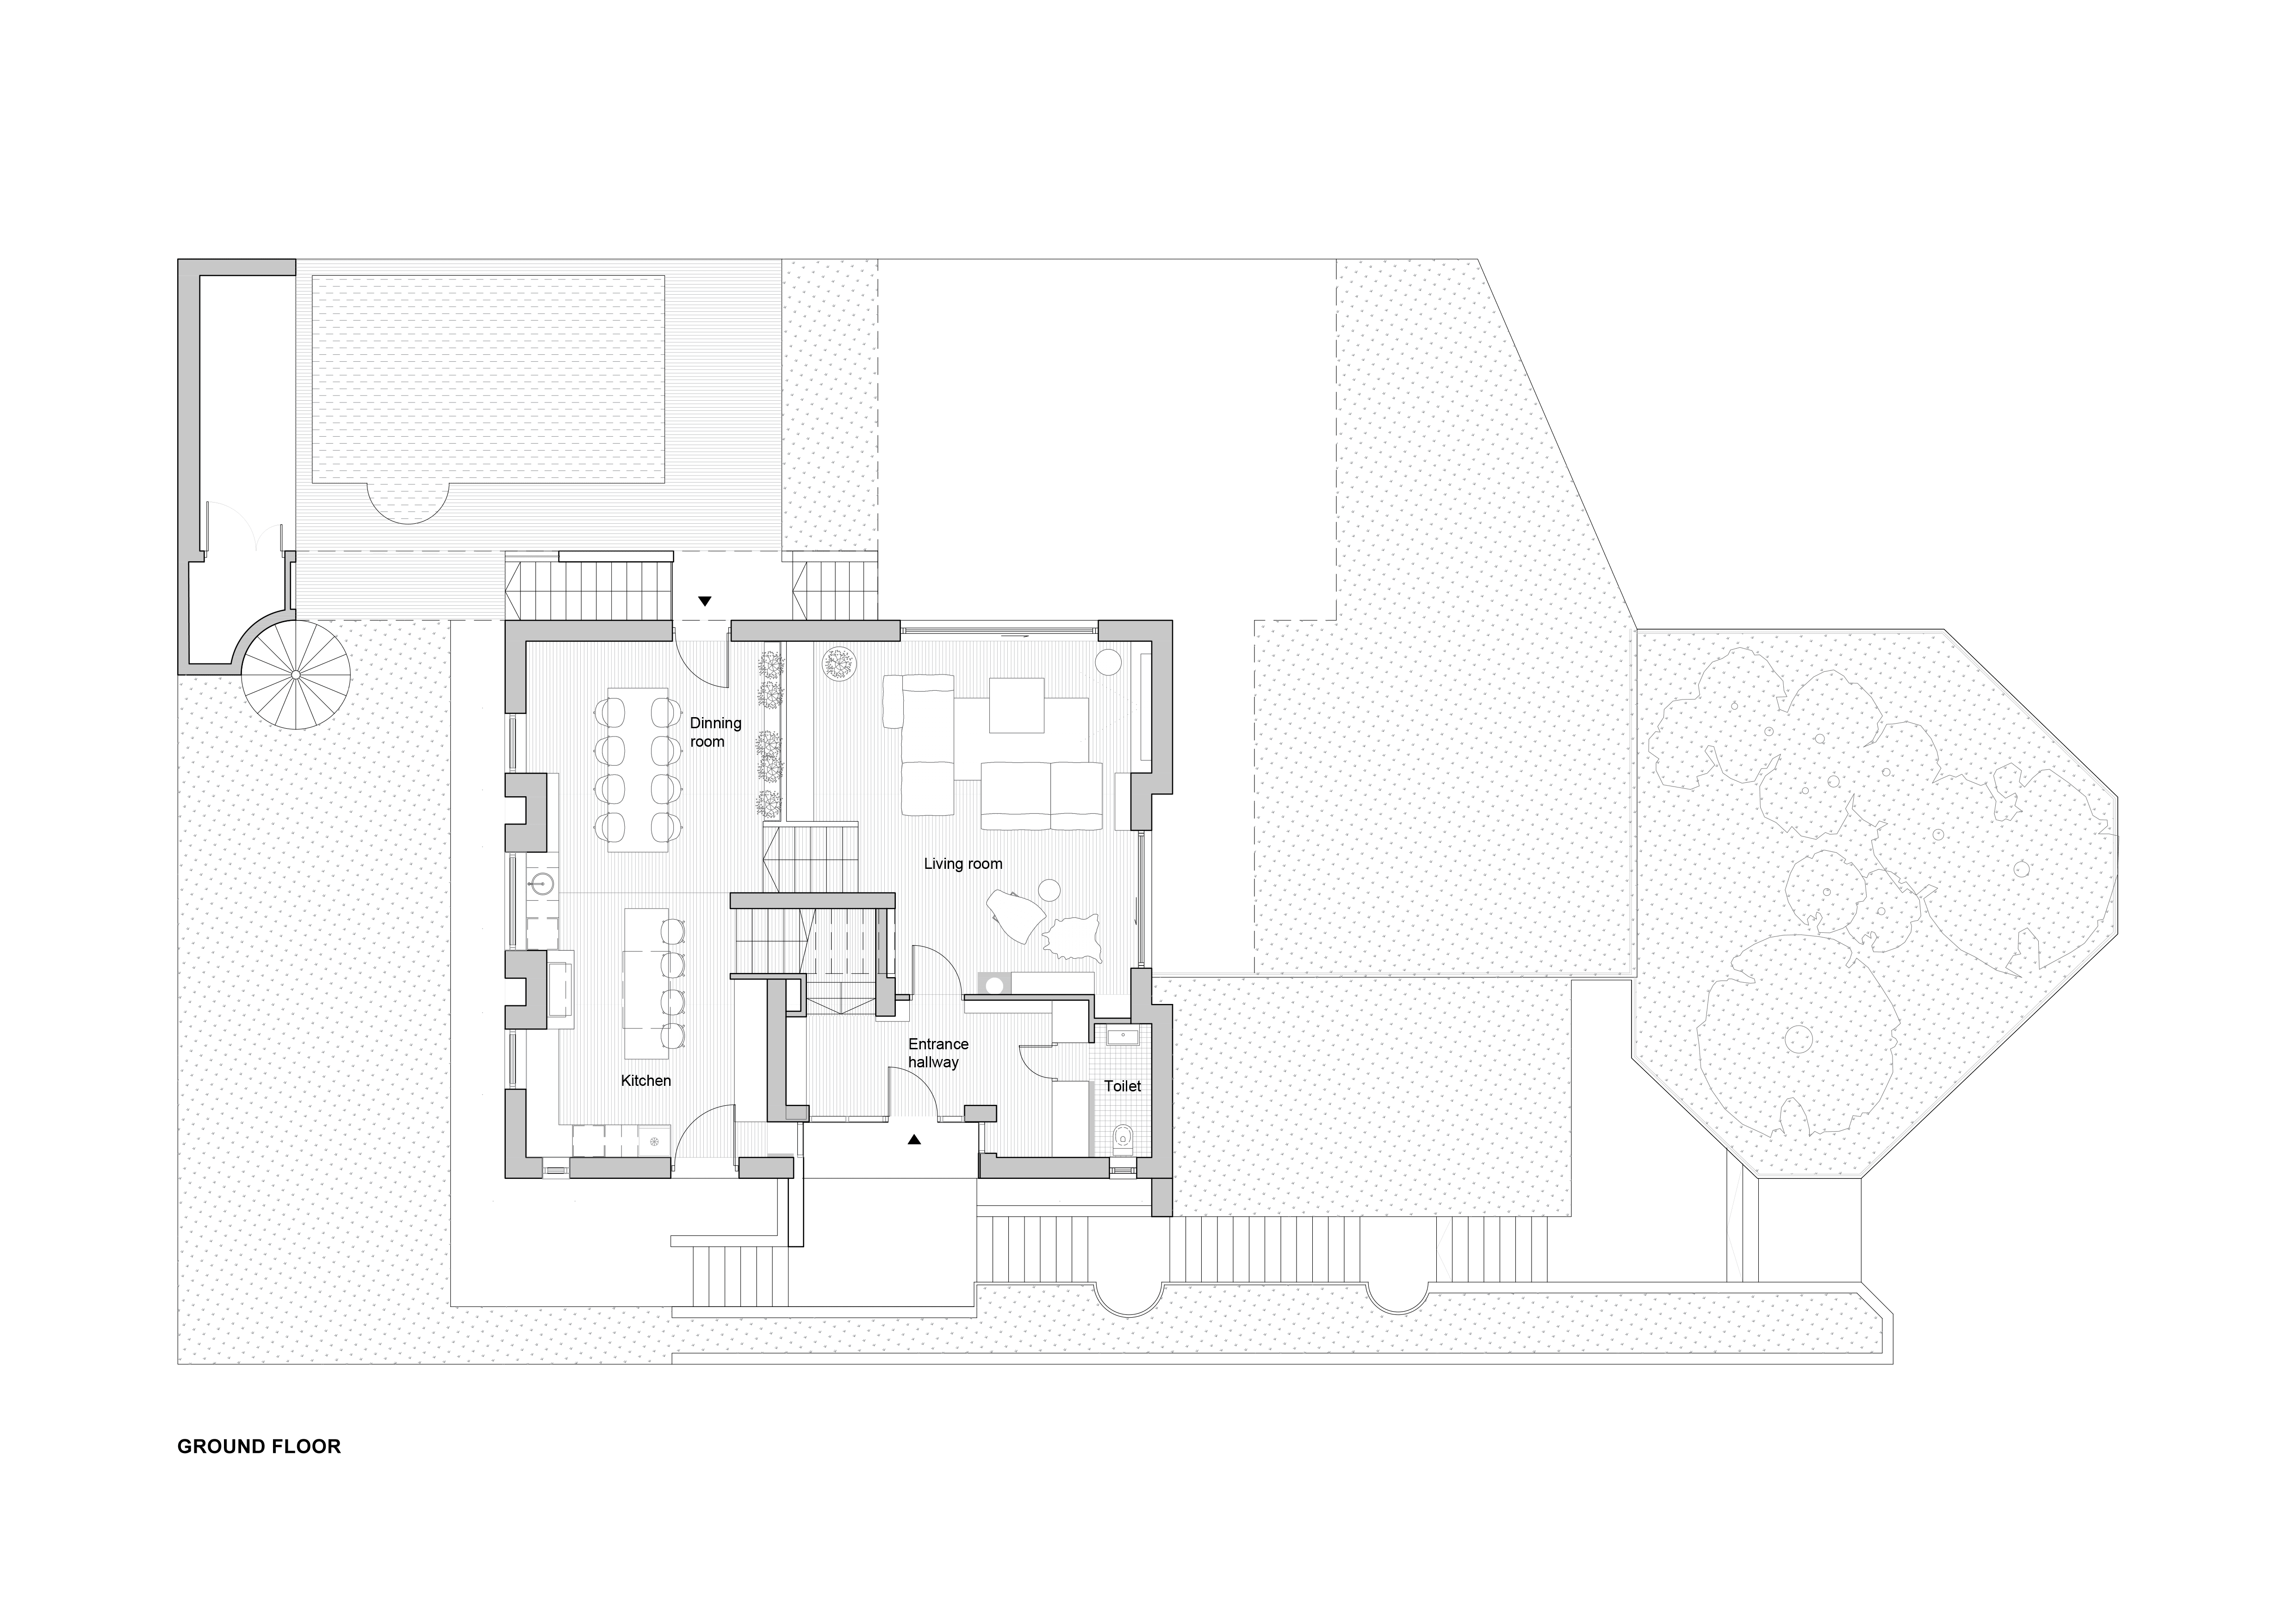 tjkl-family-house-remodel-2-ground-floor